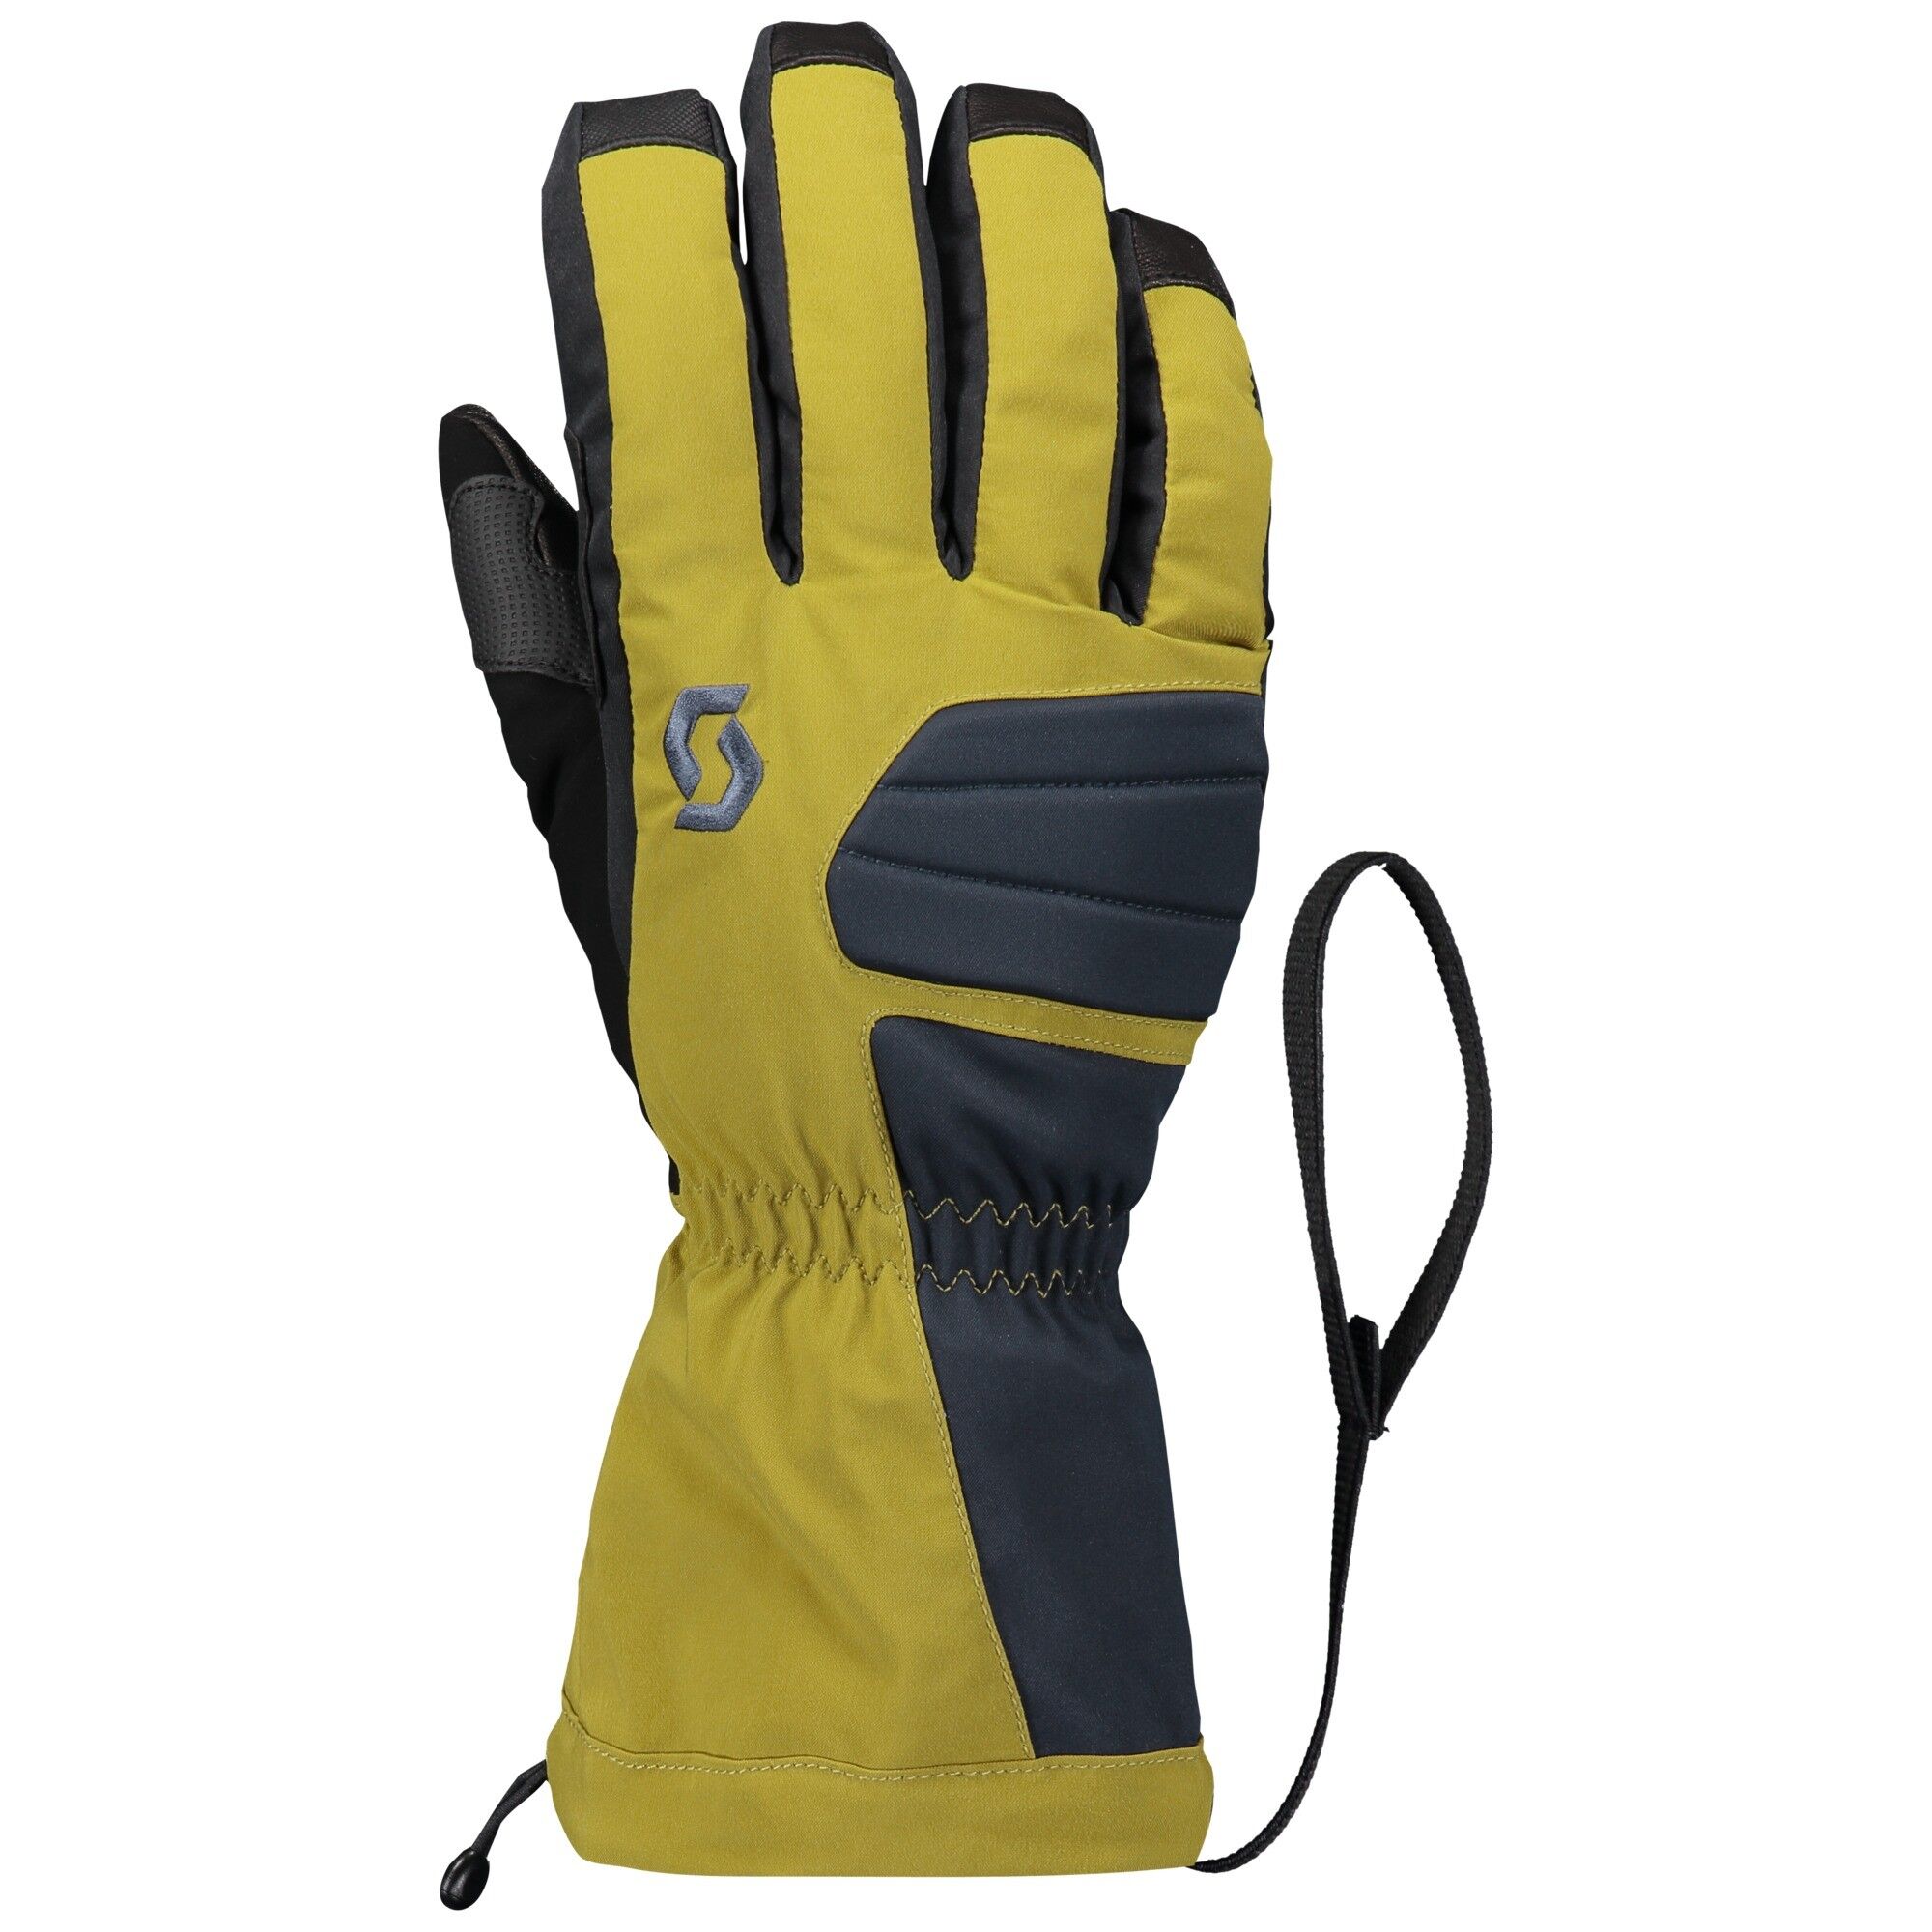 Scott Ultimate Premium GTX - Ski gloves - Men's